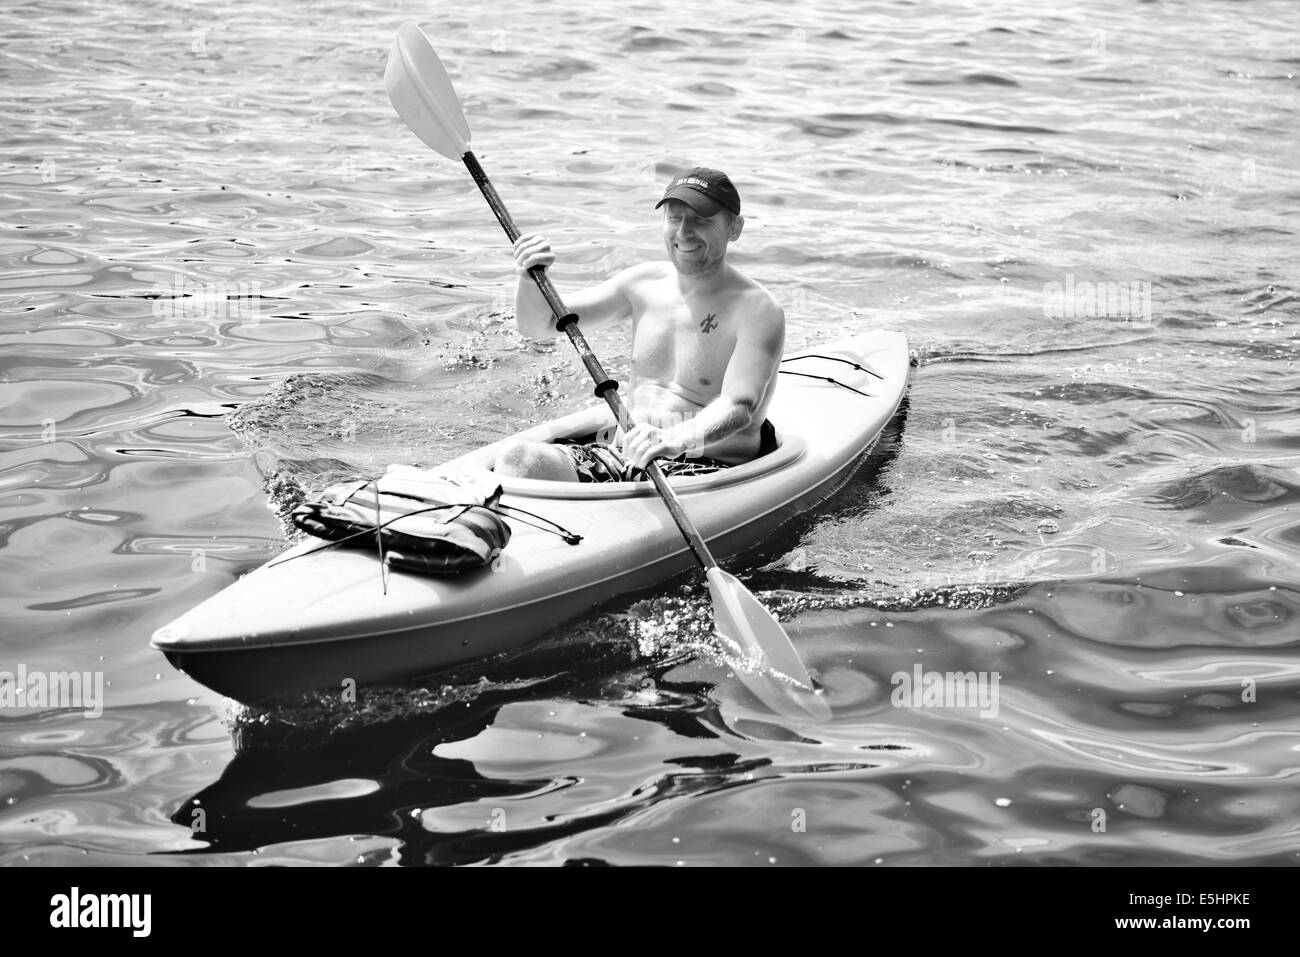 Man wearing a baseball cap kayaking on water in BW Stock Photo